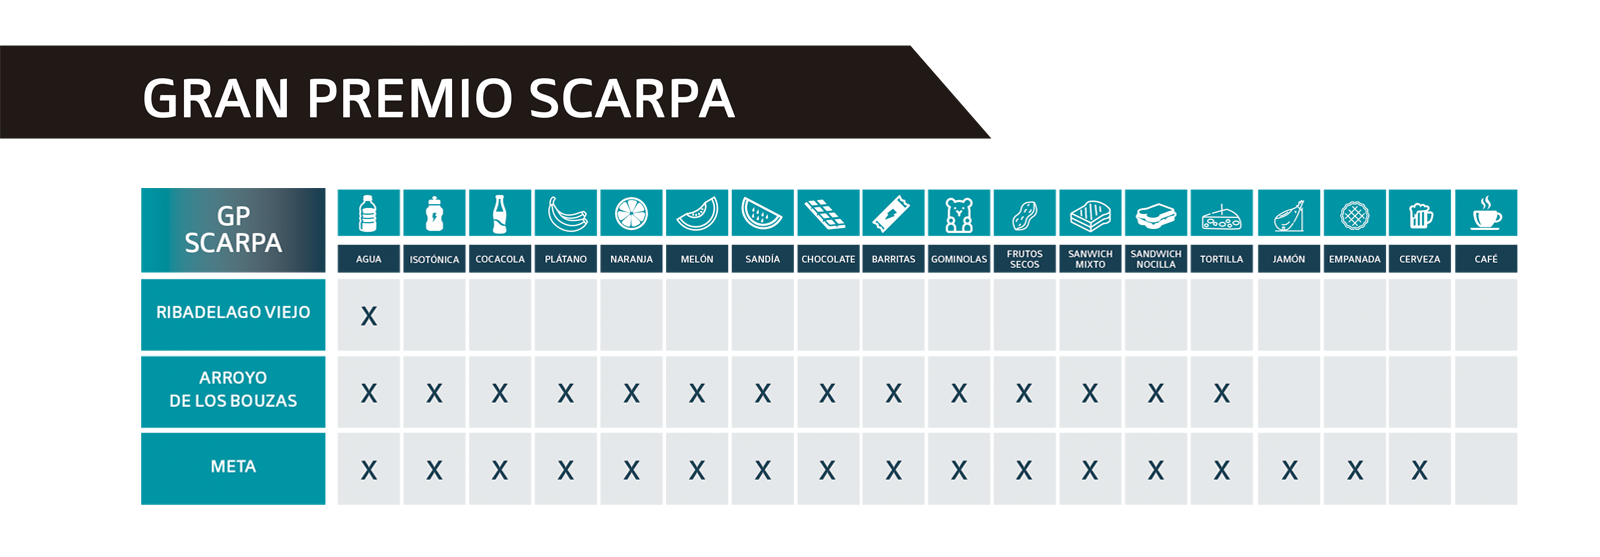 GPSC Avituallamientos GP Scarpa - Ultra Sanabria